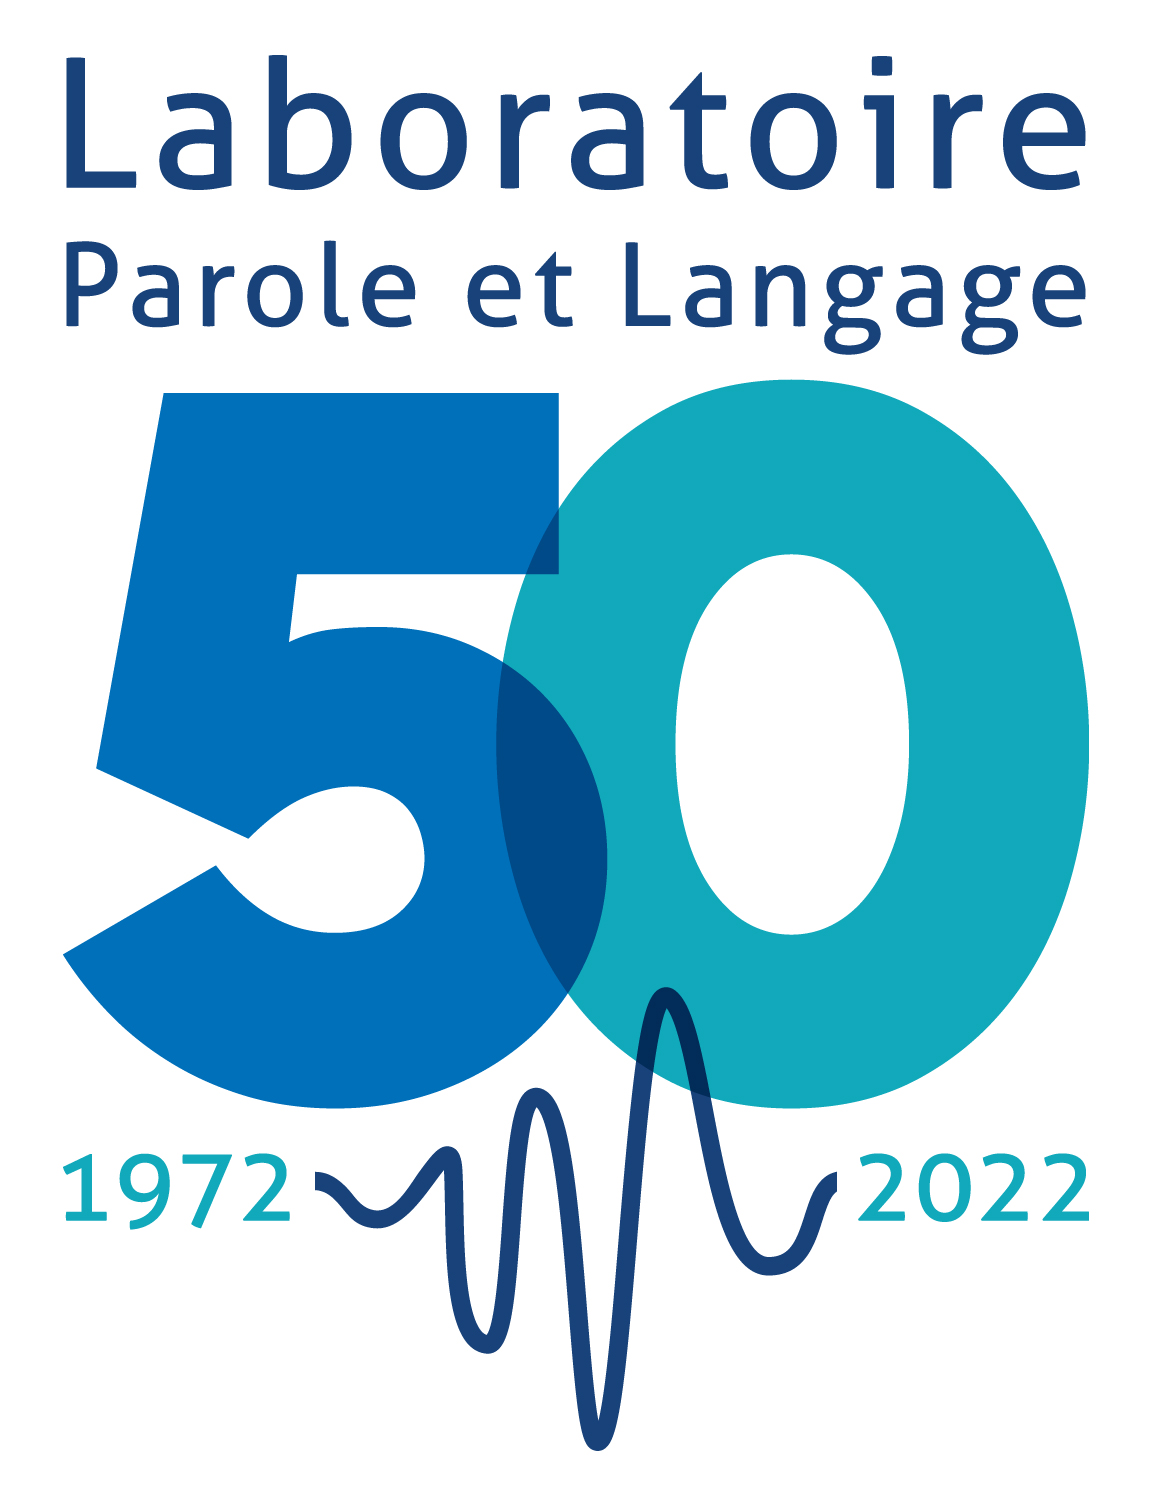 Le Laboratoire Parole et Langage fête ses 50 ans !